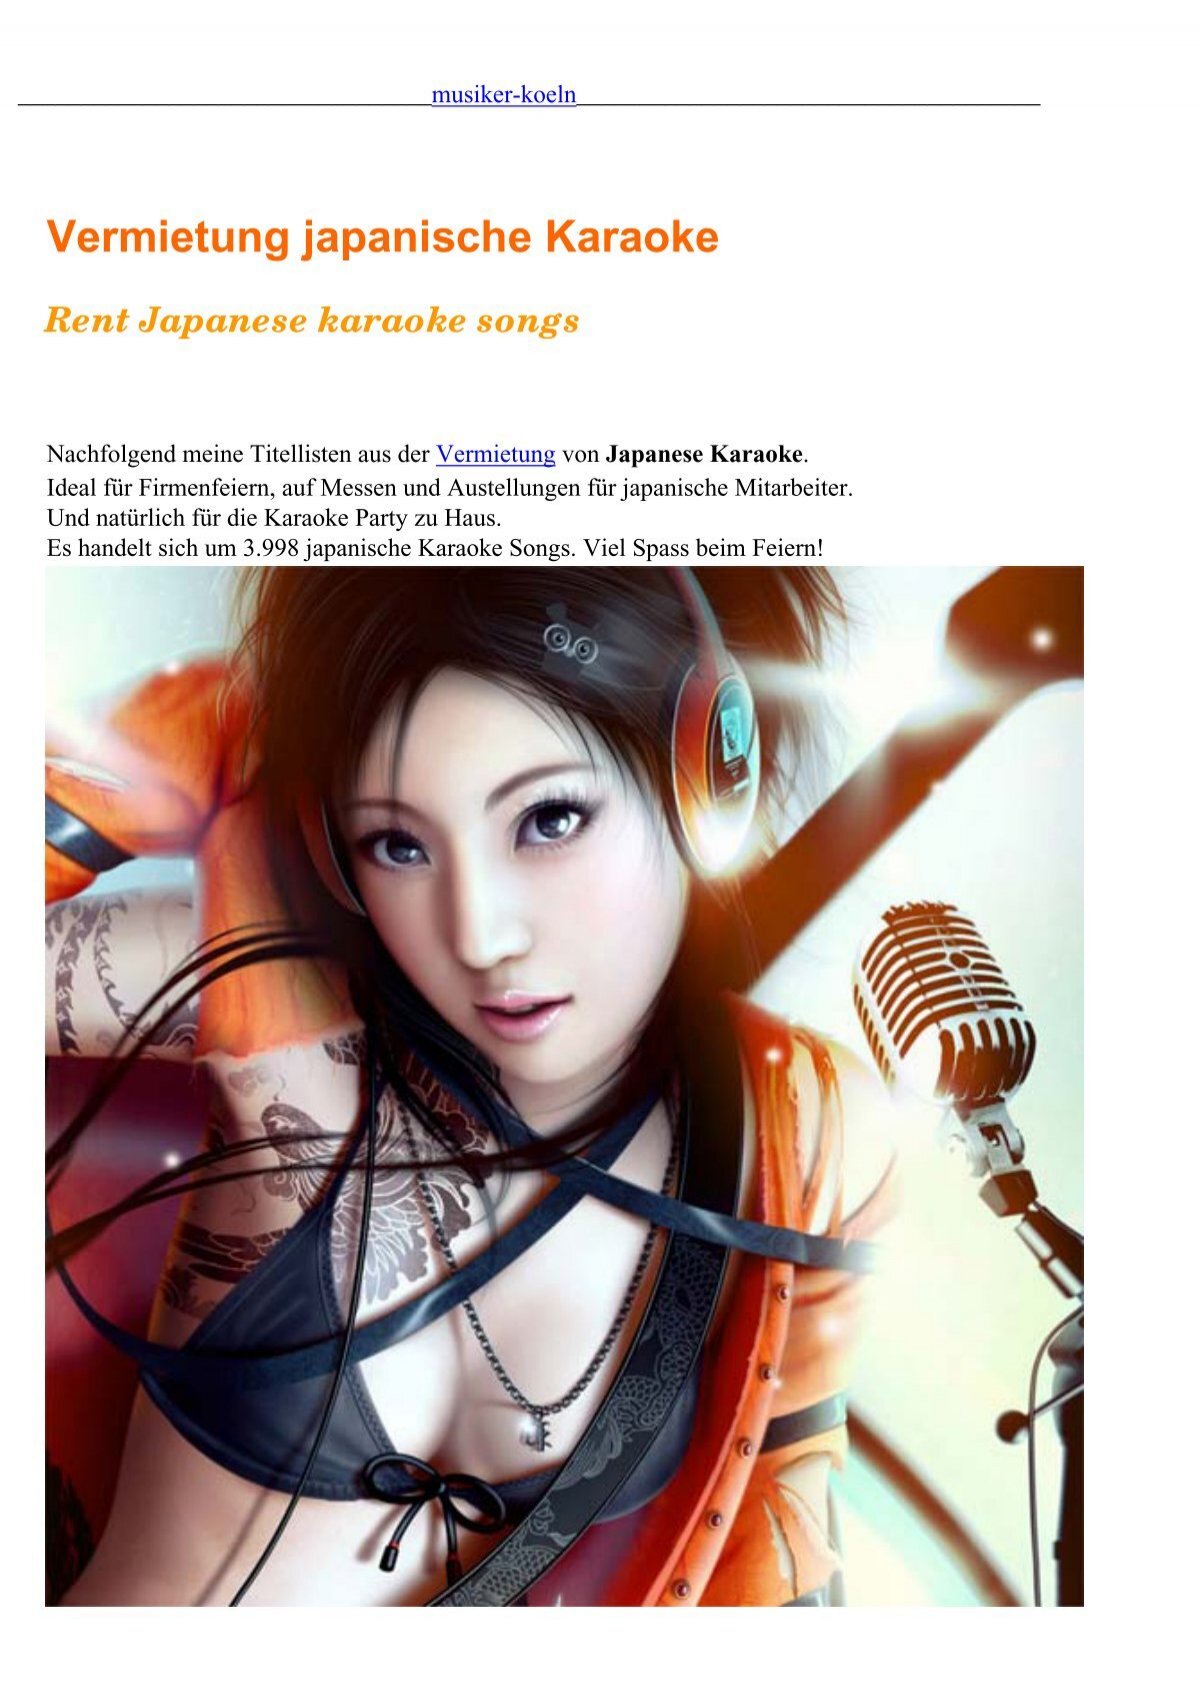 Vermietung Japanische Karaoke Musiker